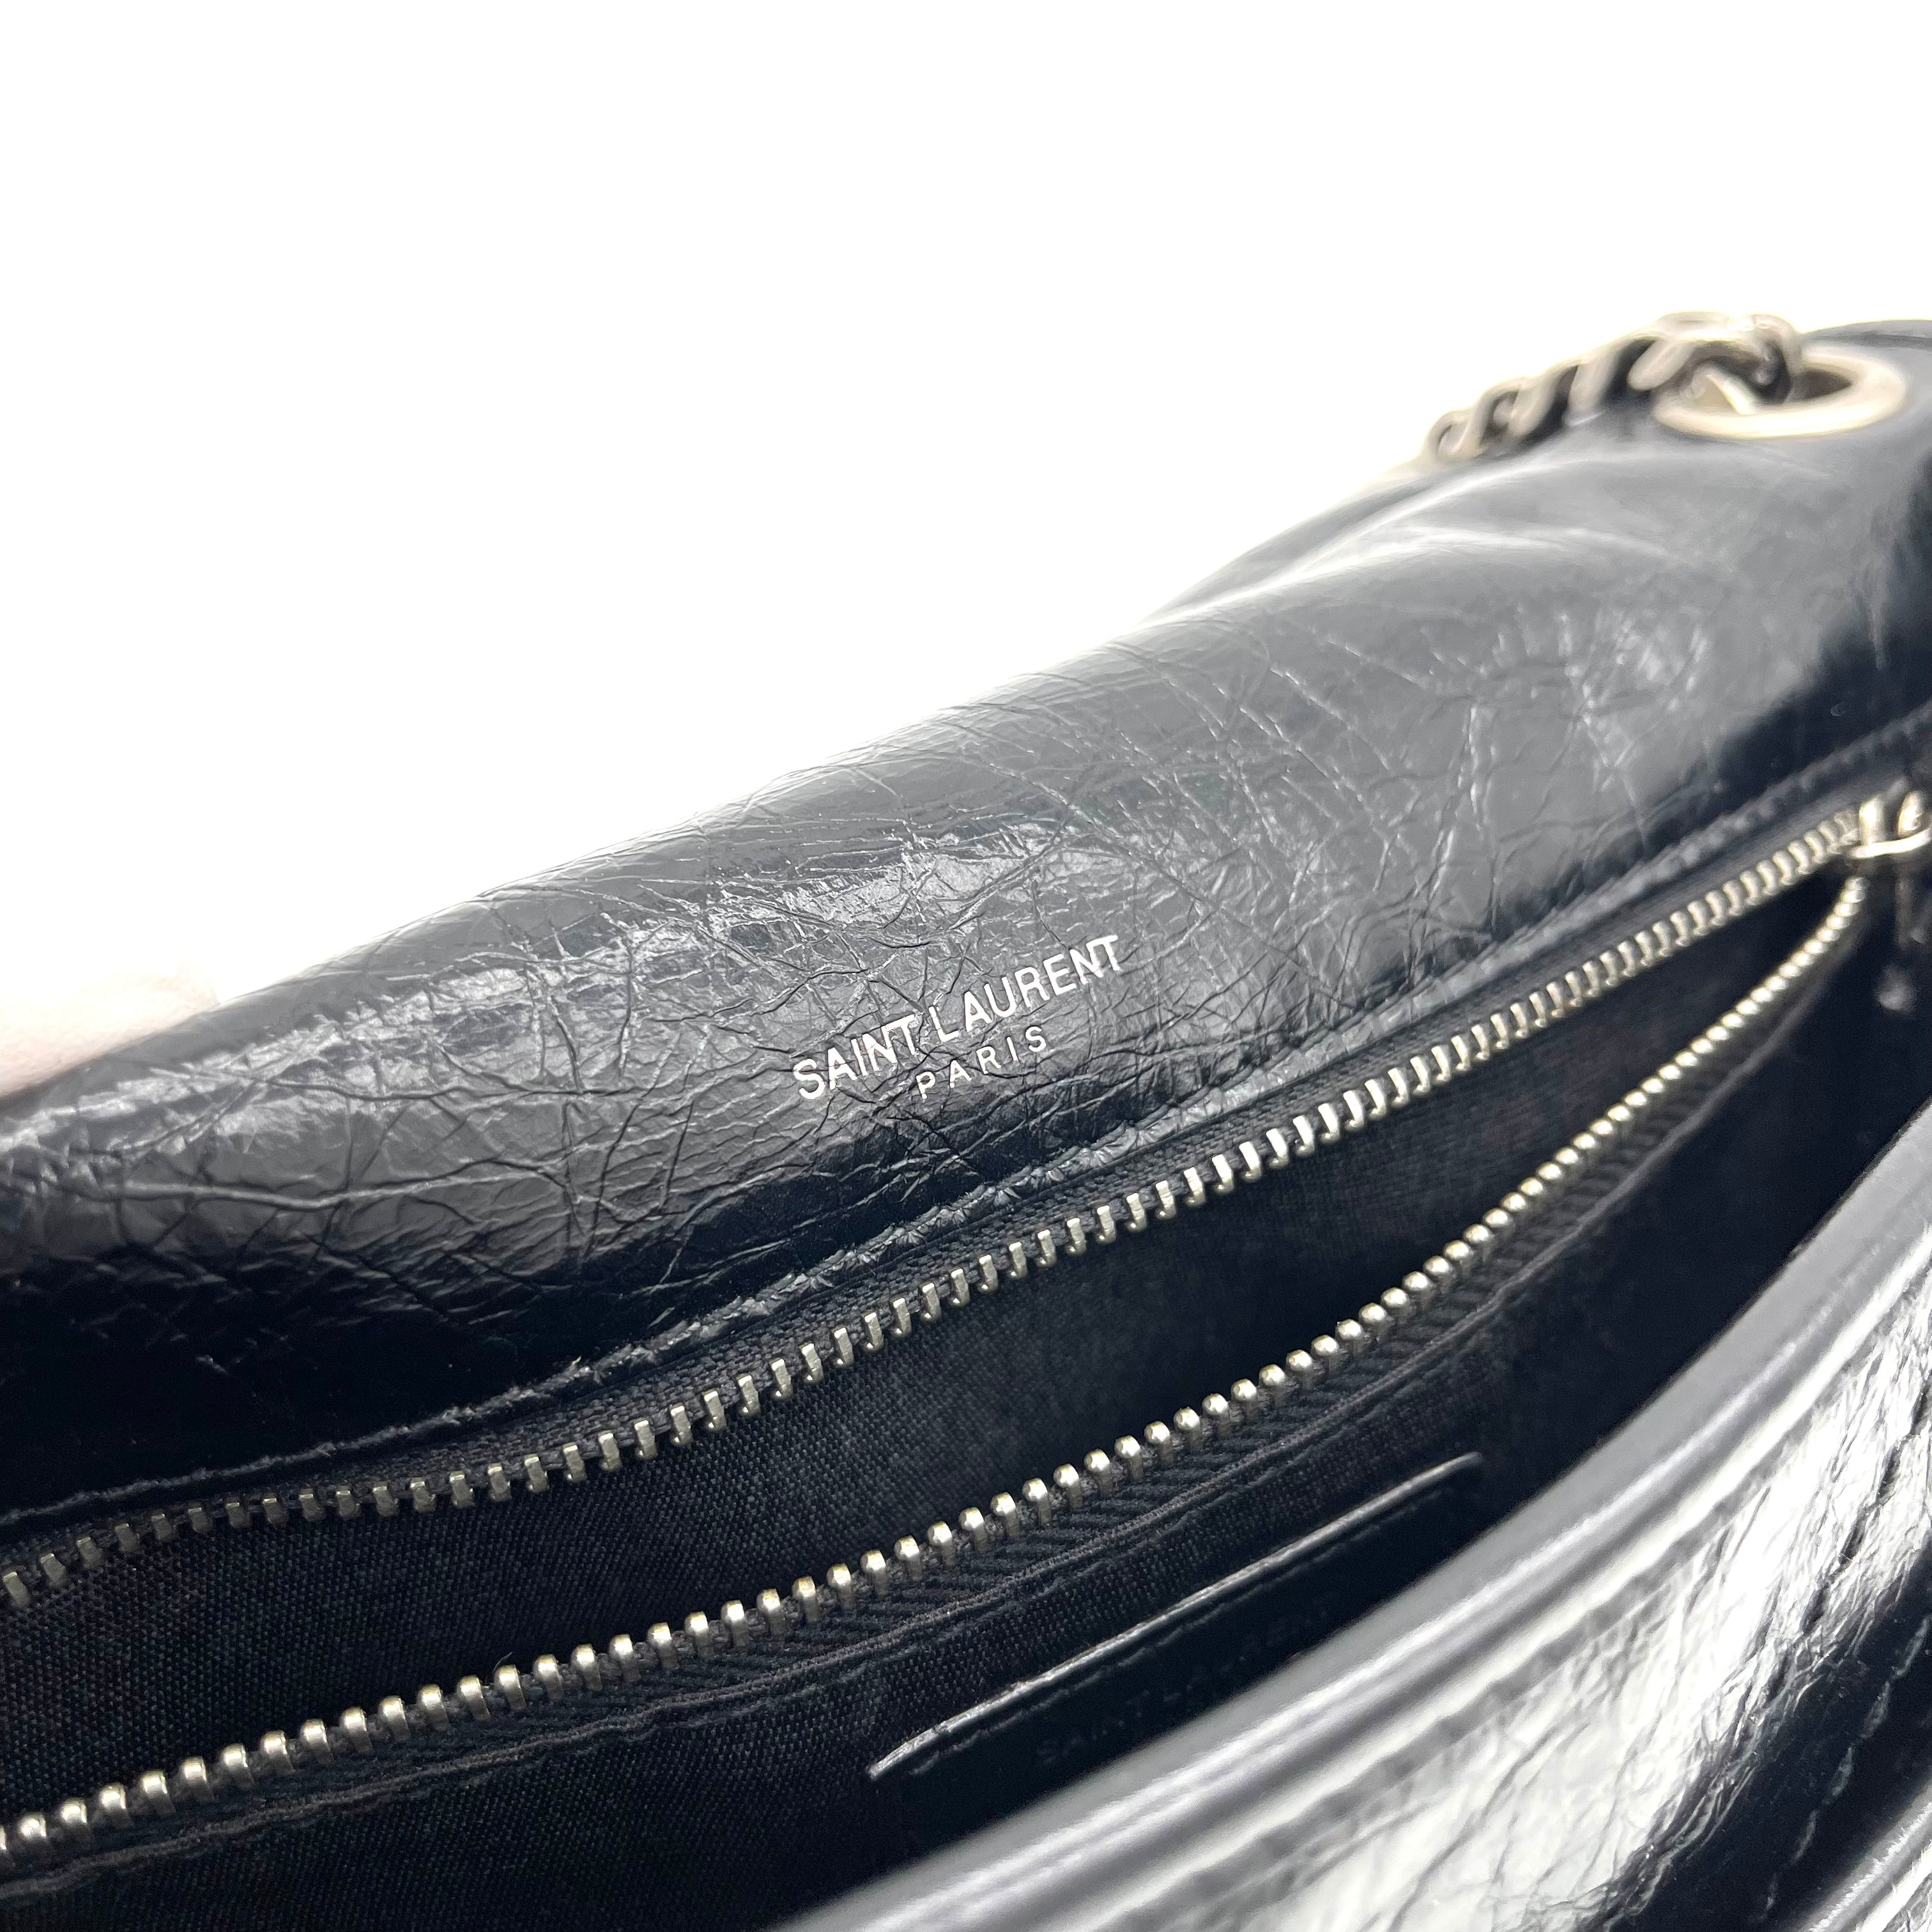 Saint Laurent Niki Medium Chain Bag